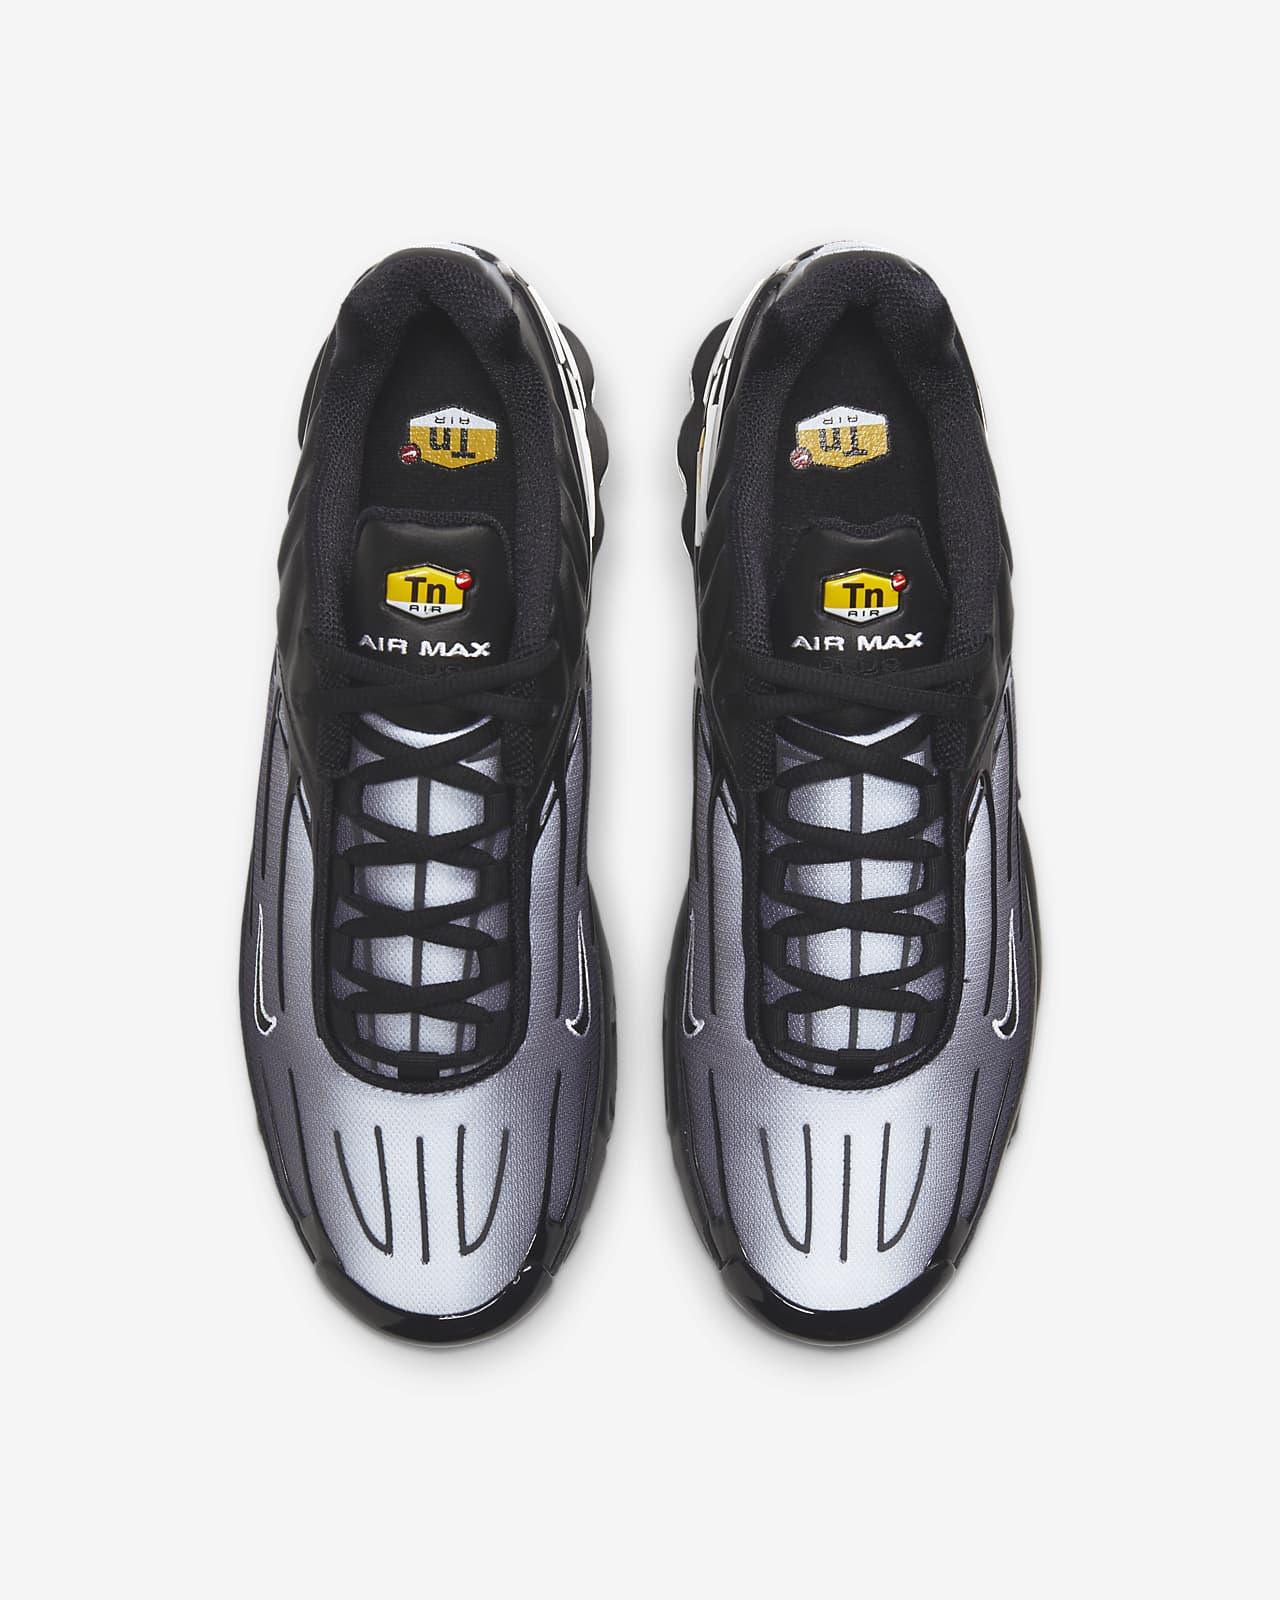 شراء Chaussure Nike Air Max Plus III pour Homme شراء